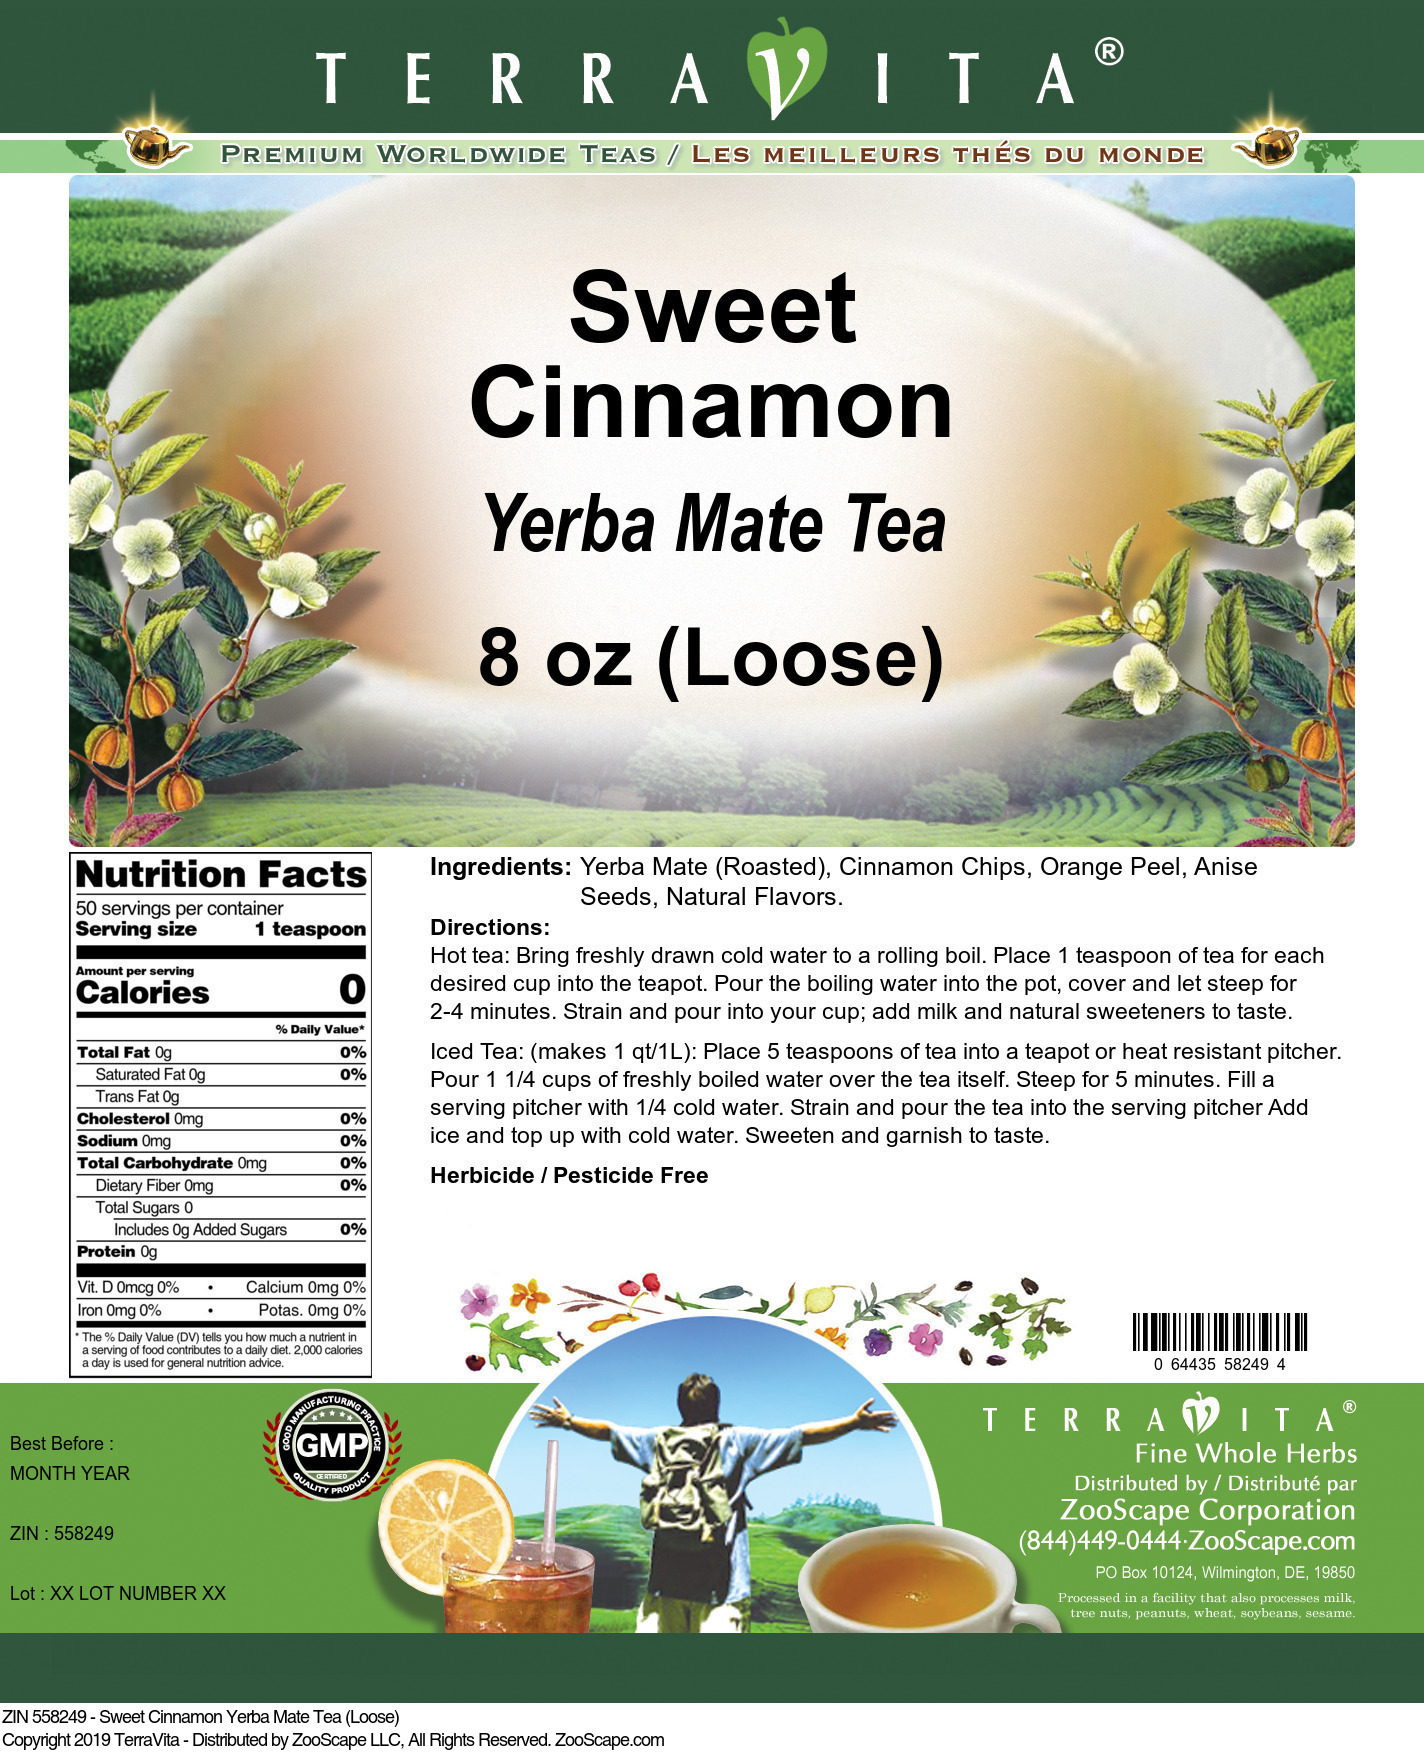 Sweet Cinnamon Yerba Mate Tea (Loose) - Label